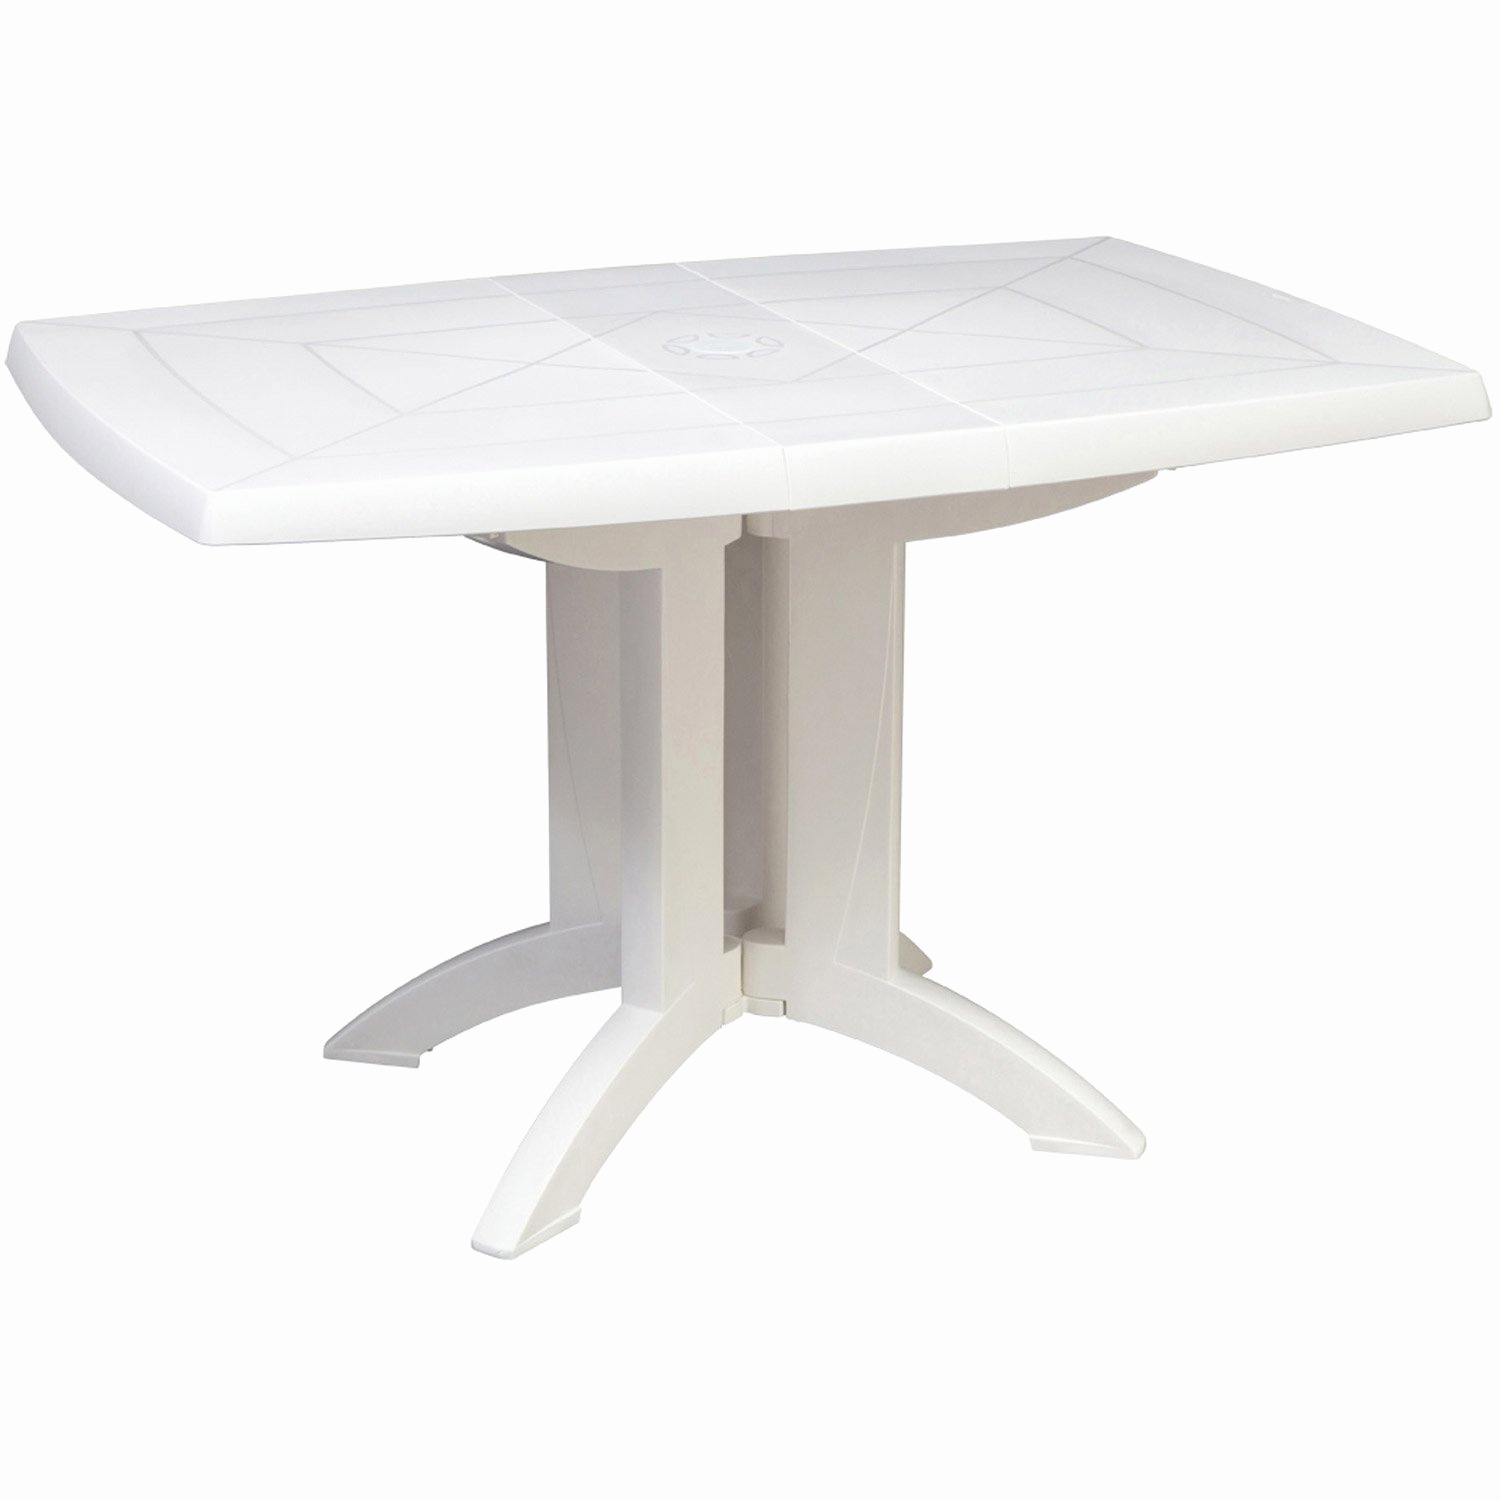 table et chaises jardin grosfillex impressionnant table de jardin plastique blanc of table et chaises jardin grosfillex